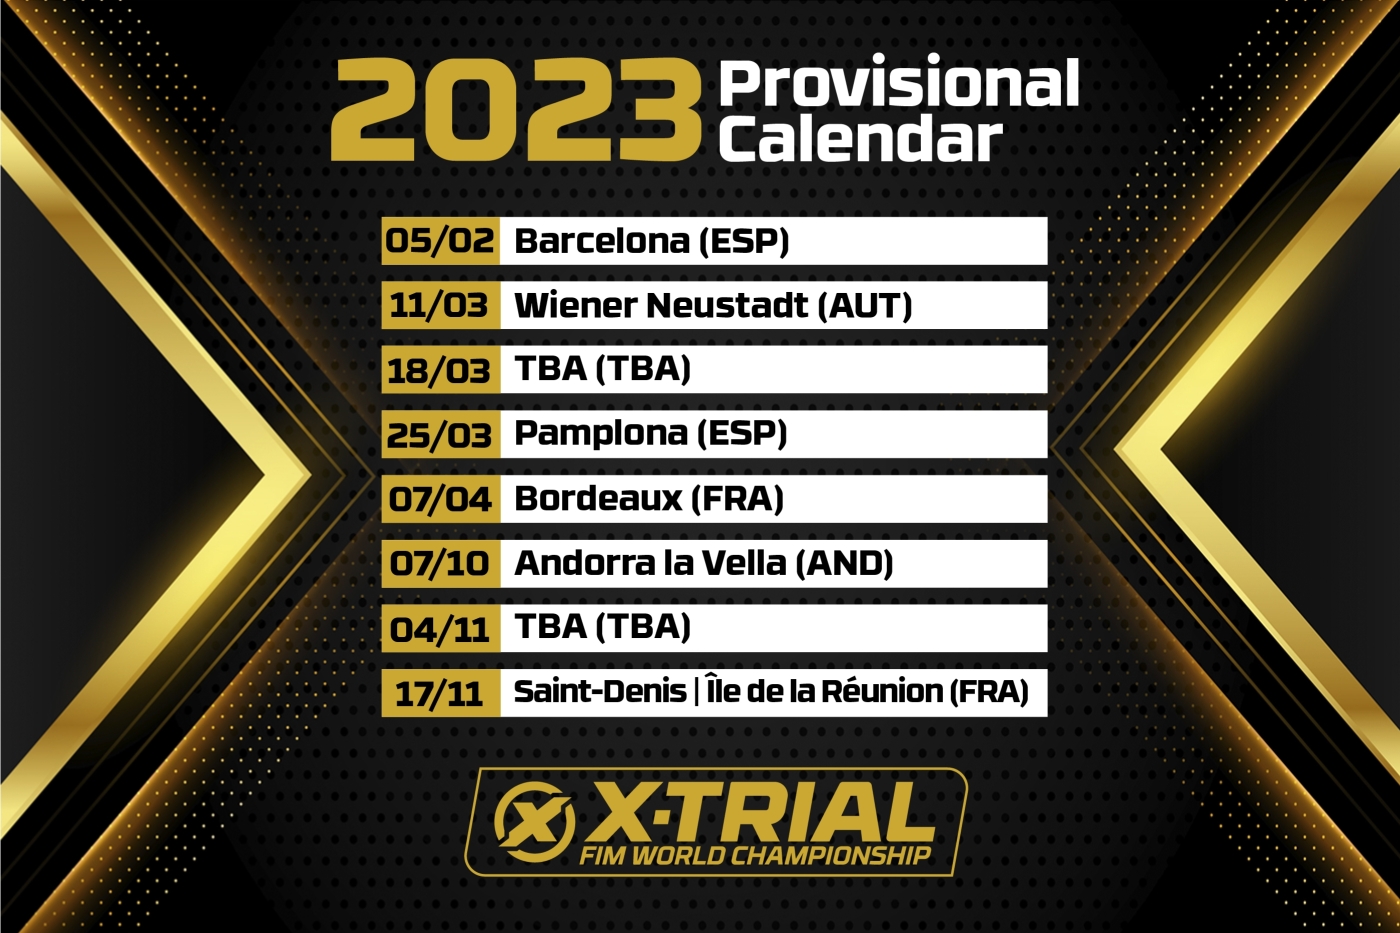 Calendario provisional del Campeonato del Mundo FIM de X-Trial 2023 